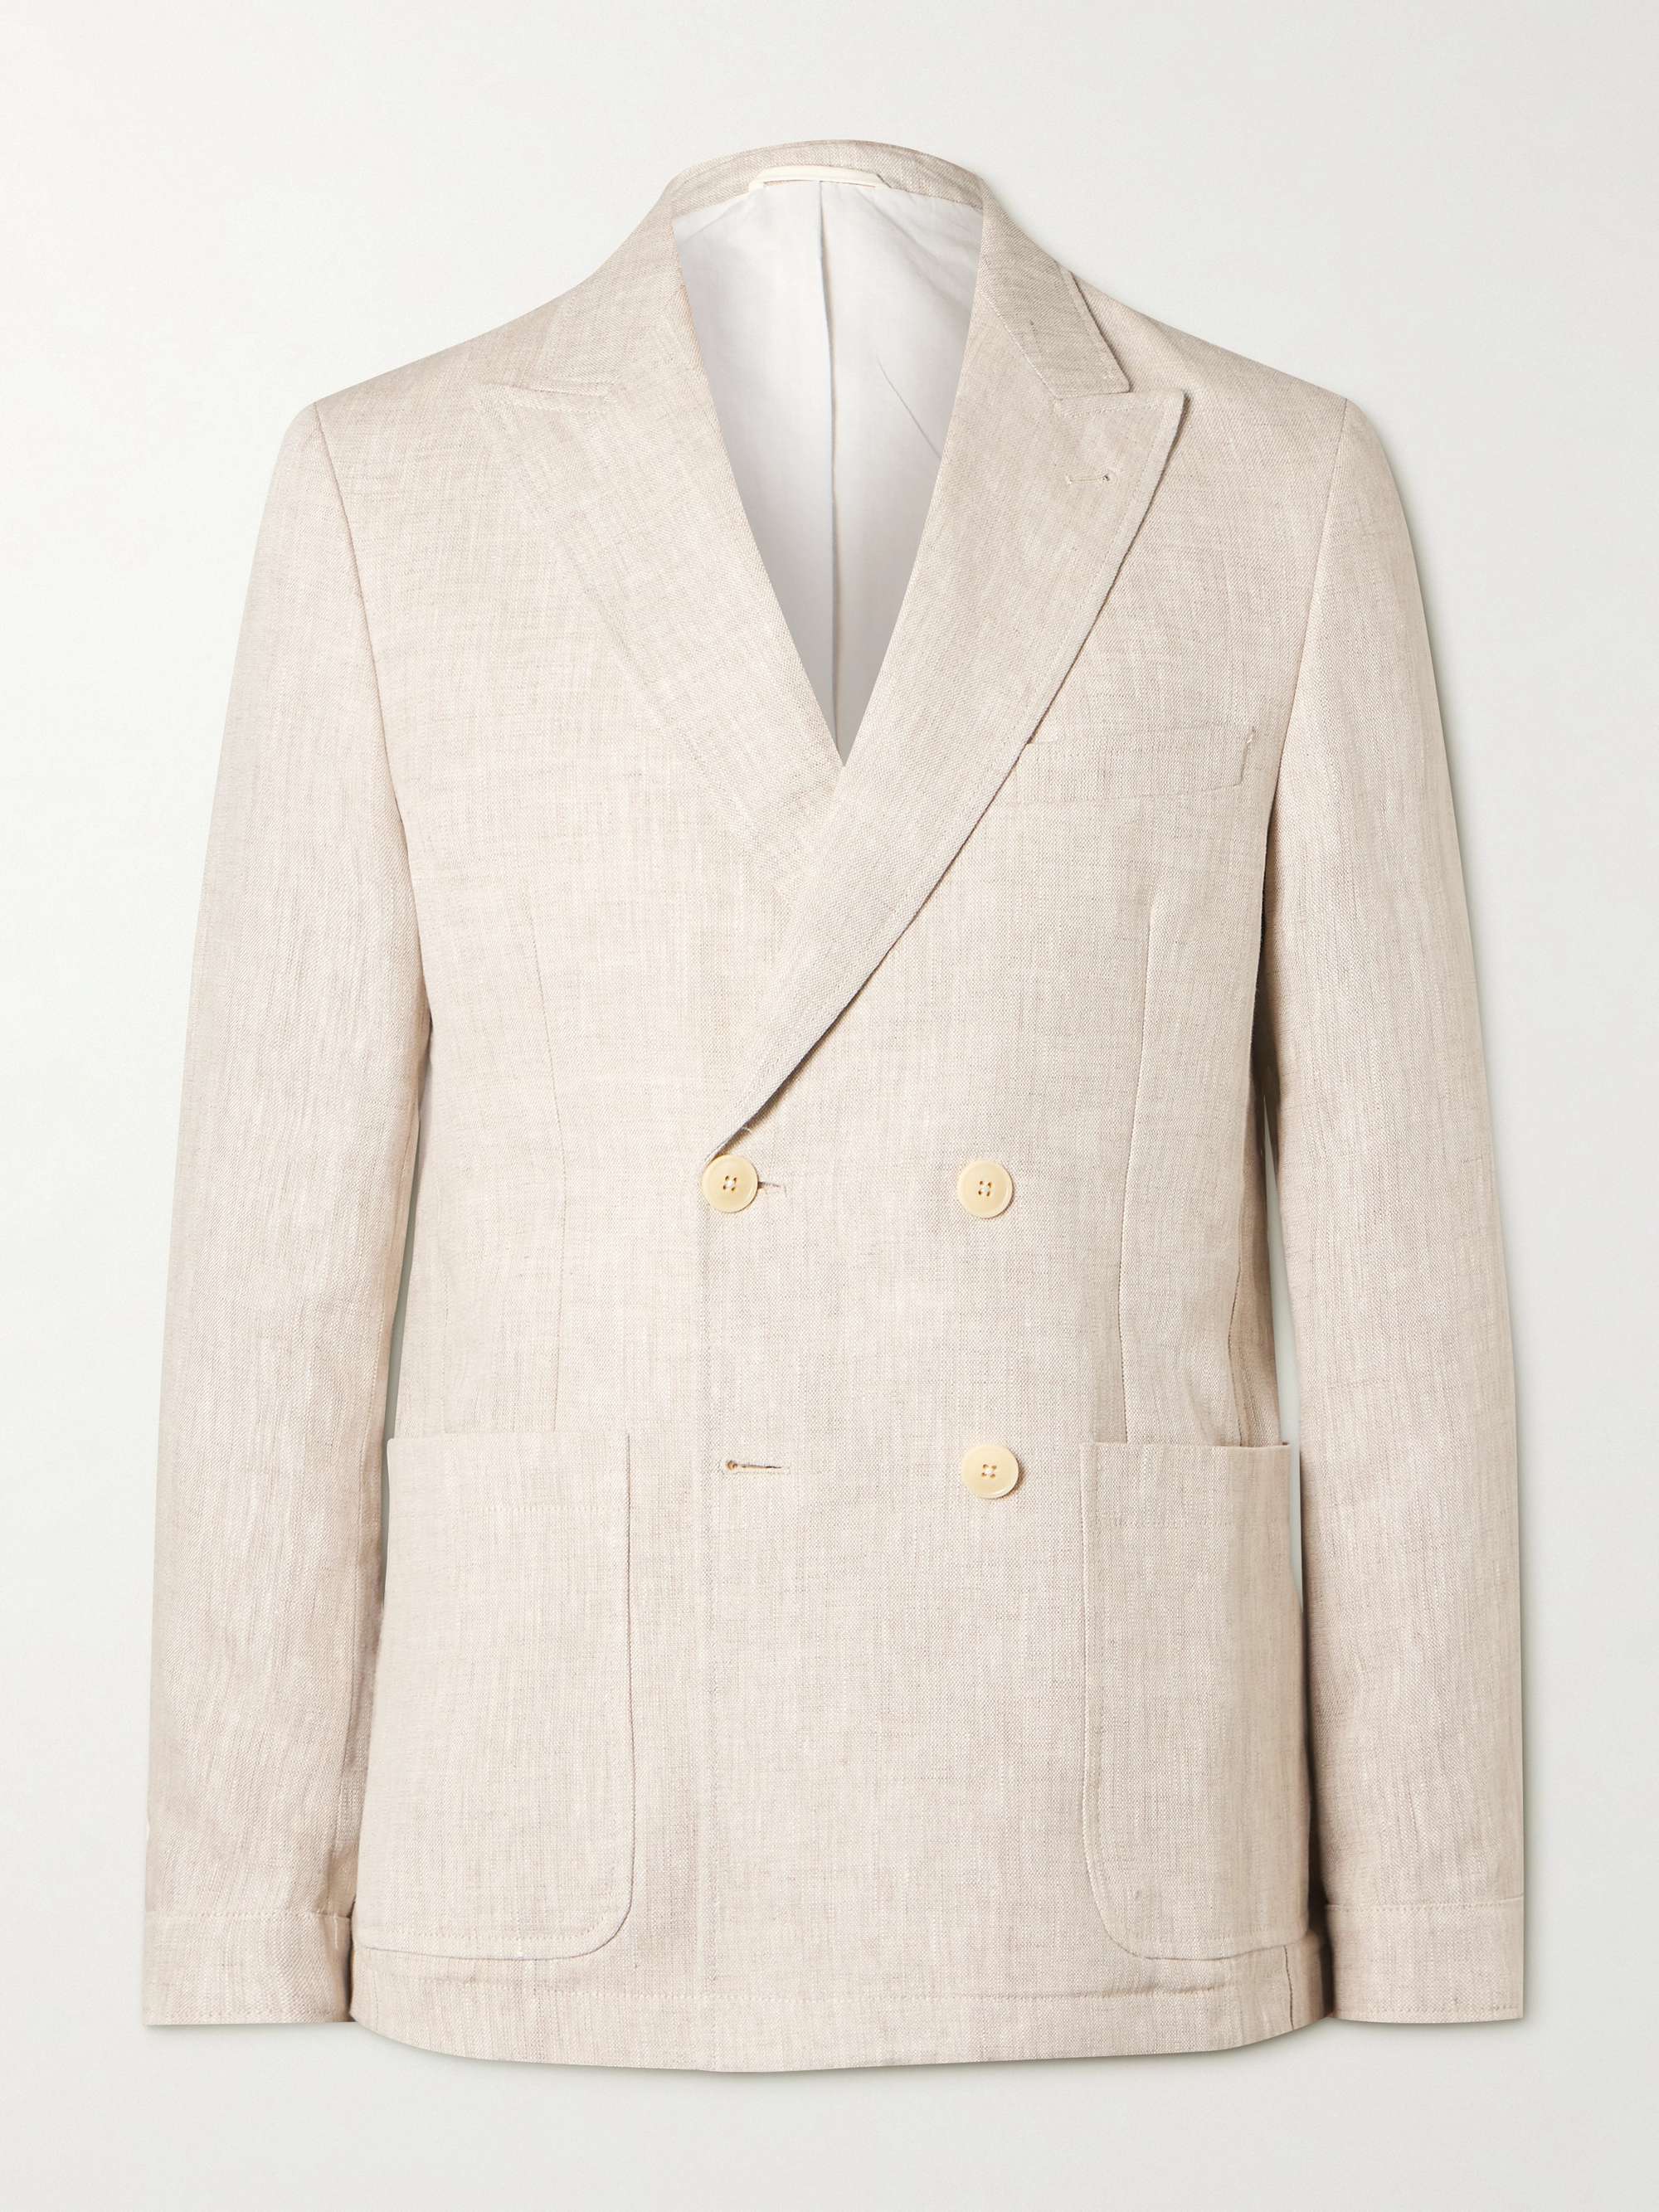 OLIVER SPENCER Double-Breasted Linen Suit Jacket | MR PORTER